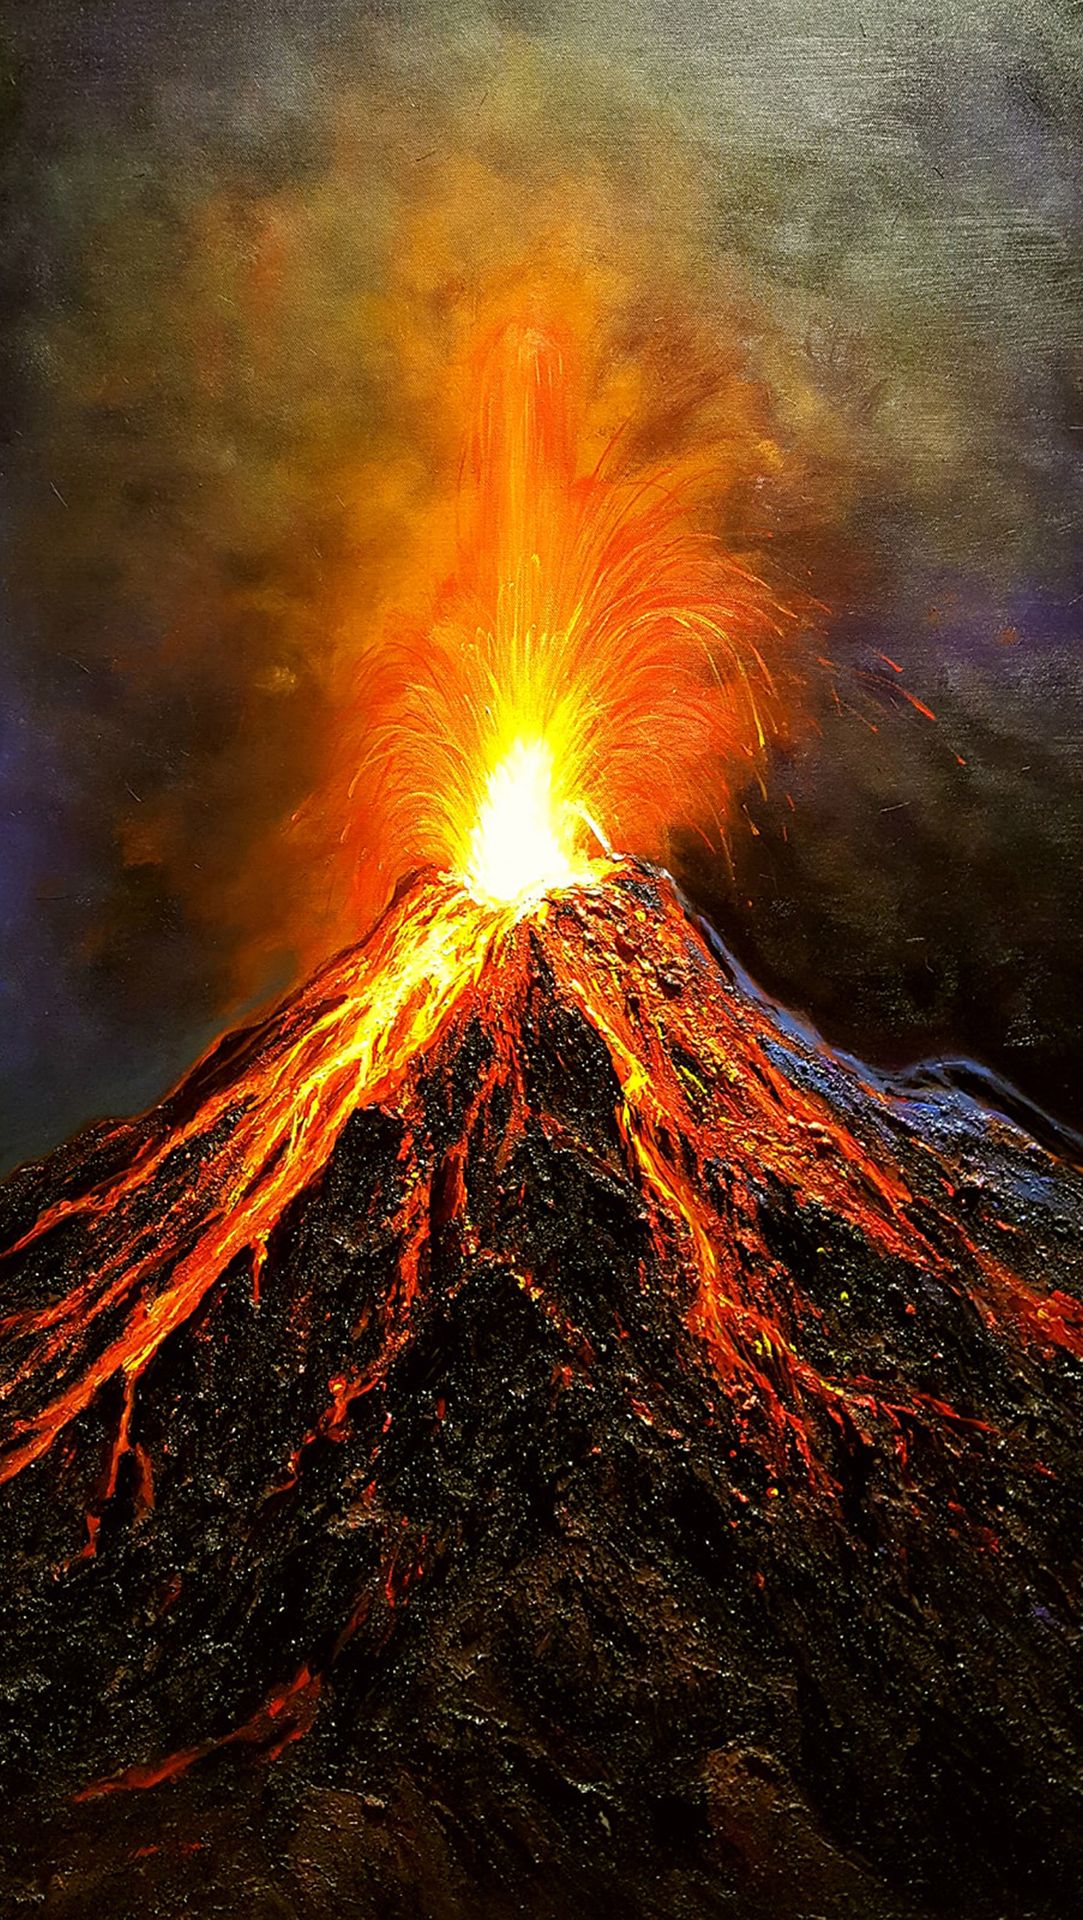 Núi Lửa Phun Trào: Bạn đã bao giờ ngắm nhìn một khoảnh khắc đầy ánh sáng và sức mạnh của núi lửa phun trào chưa? Hãy đến với hình ảnh này để được chứng kiến một thế giới đang hoạt động với tốc độ nhanh chóng. Chắc chắn, hình ảnh này sẽ khiến bạn cảm thấy kinh ngạc và thích thú.